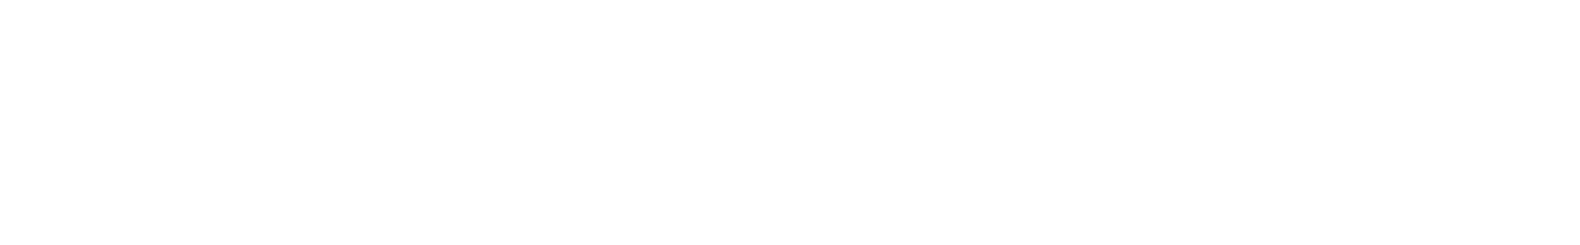 Prada logo grand pour les fonds sombres (PNG transparent)